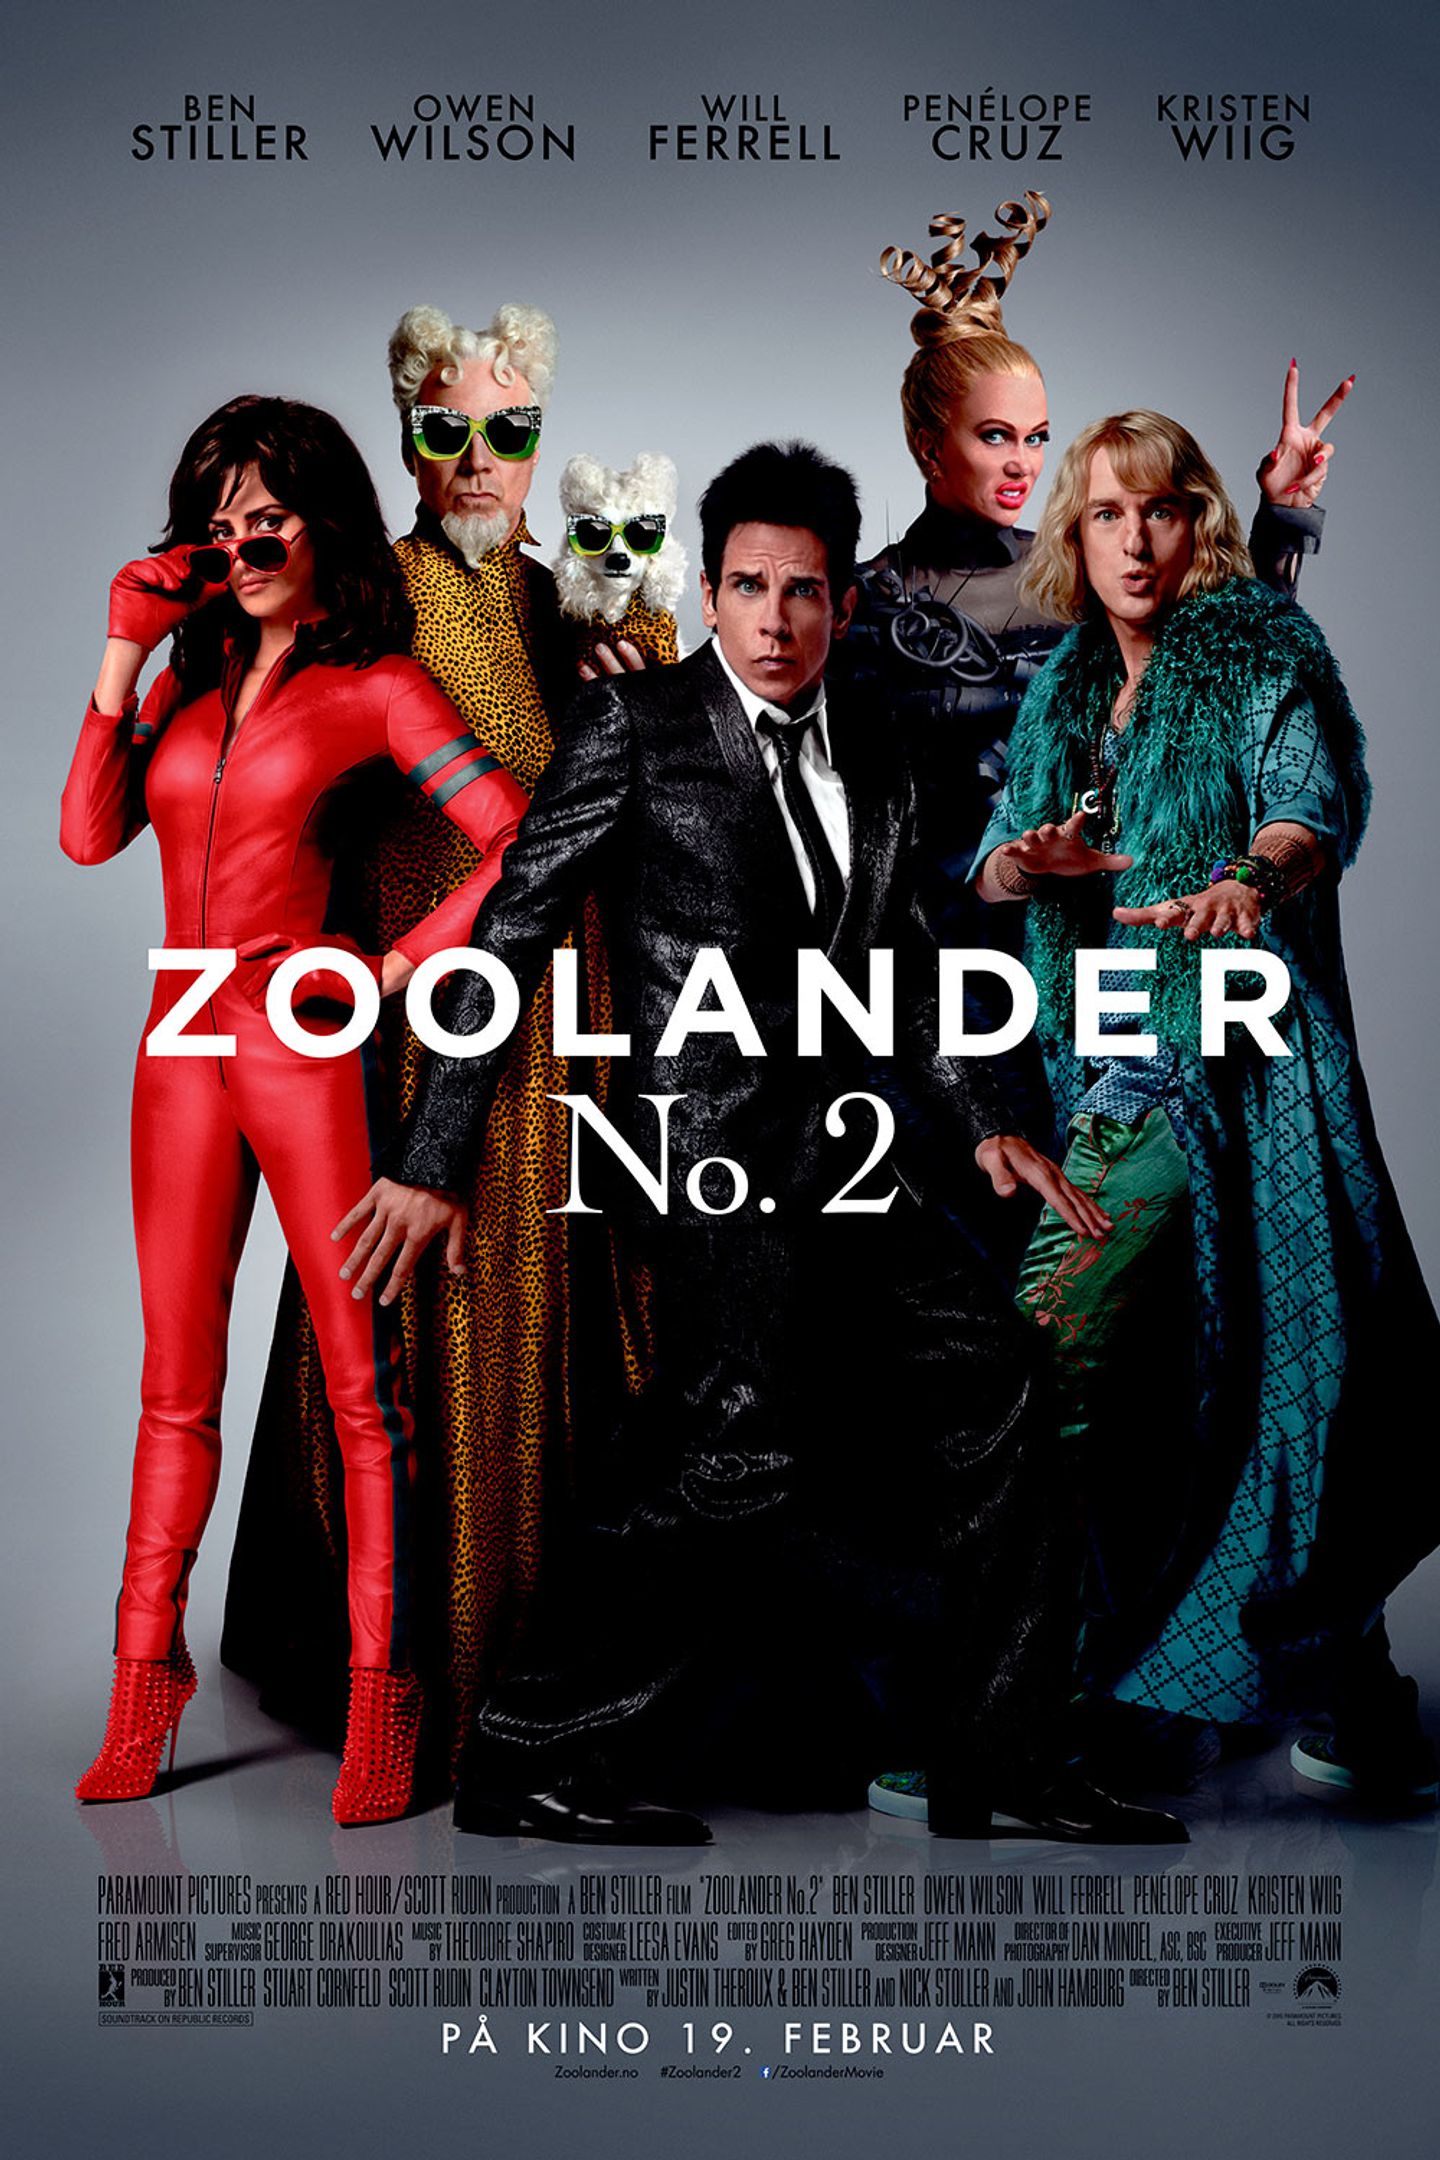 Plakat for 'Zoolander 2'